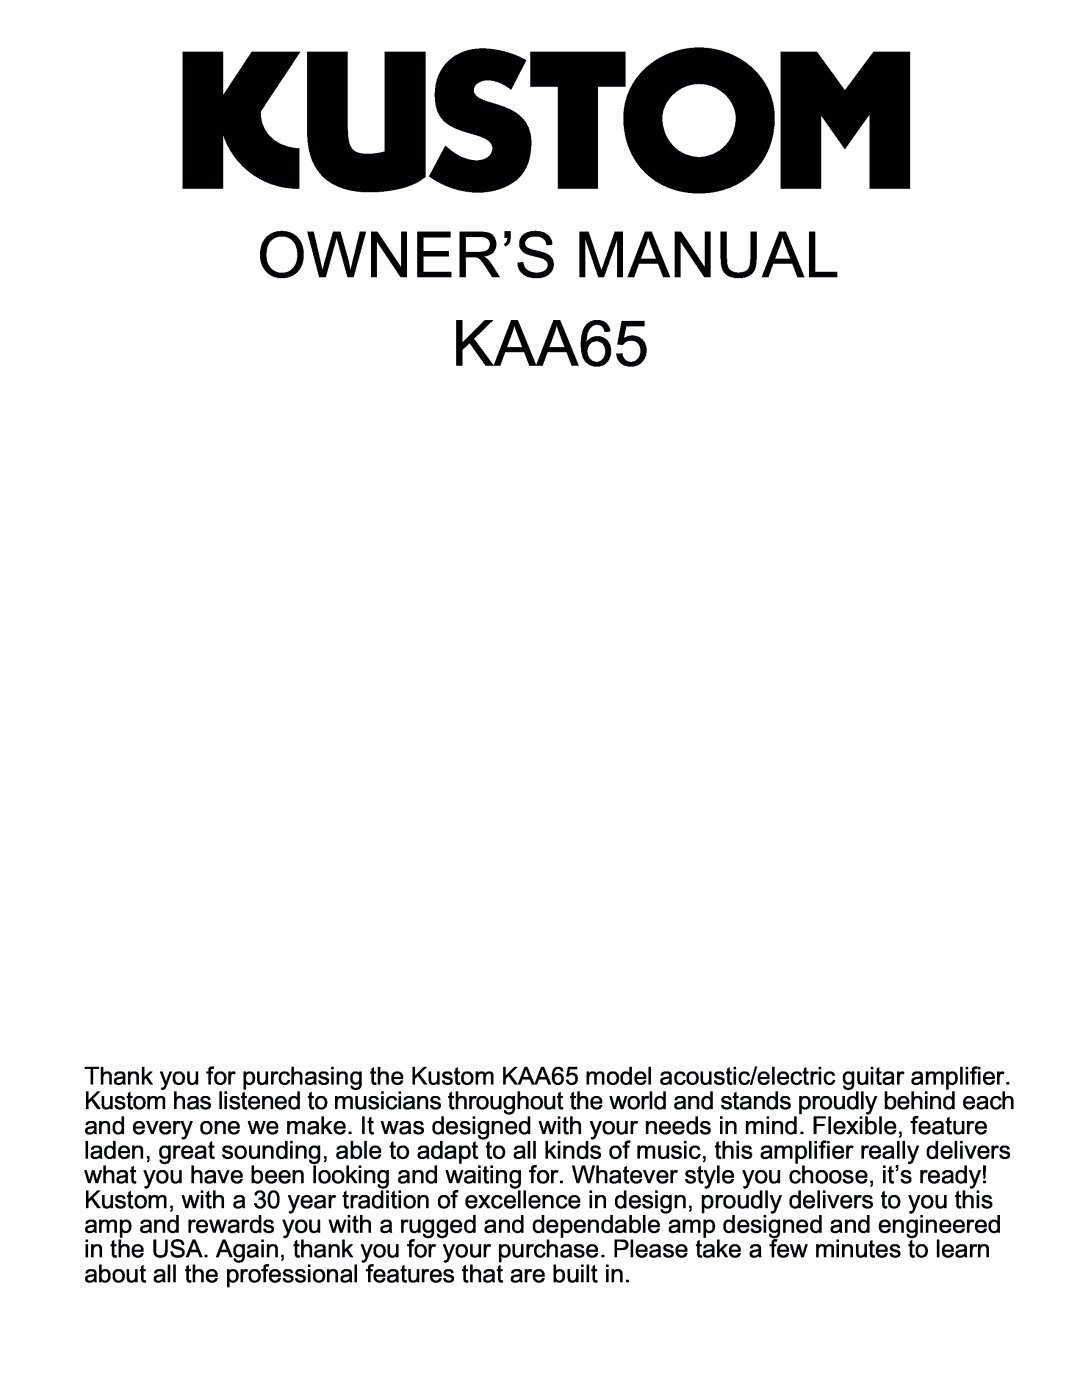 Kustom KAA65 manual 